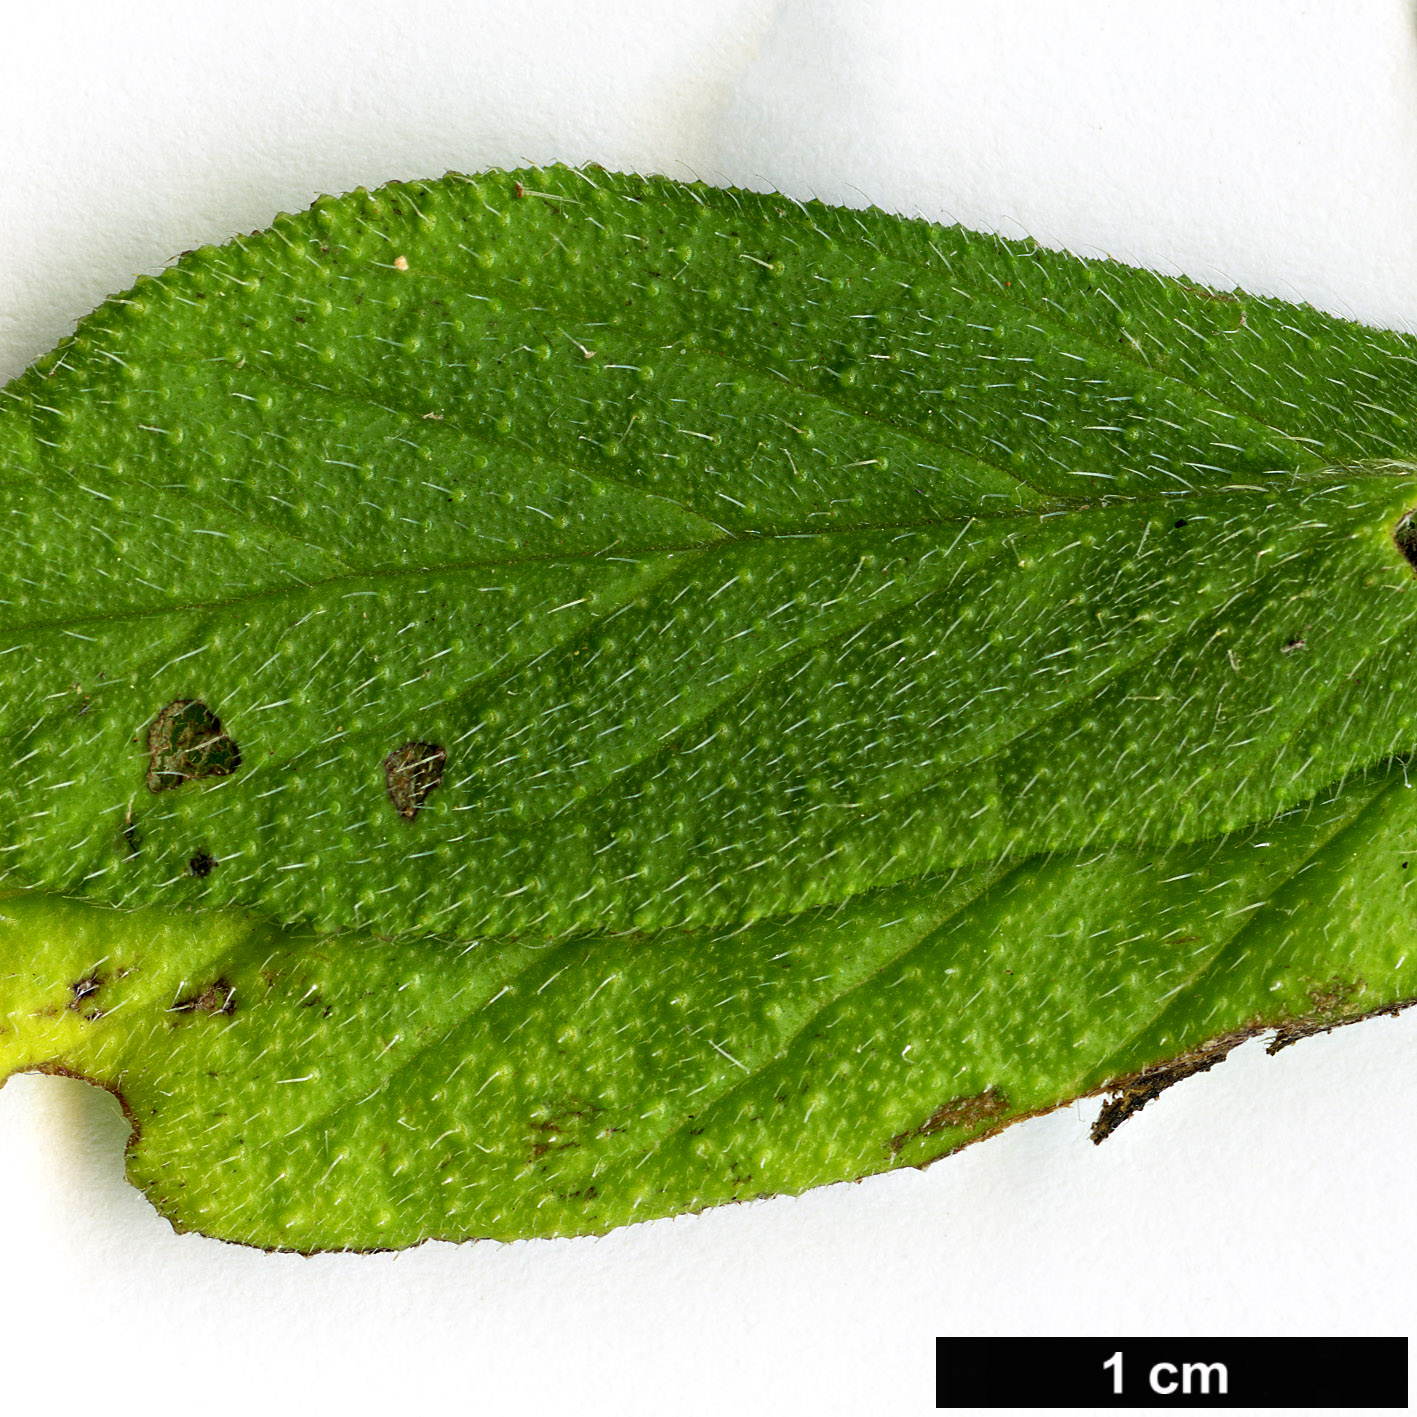 High resolution image: Family: Boraginaceae - Genus: Echium - Taxon: strictum - SpeciesSub: subsp. exasperatum